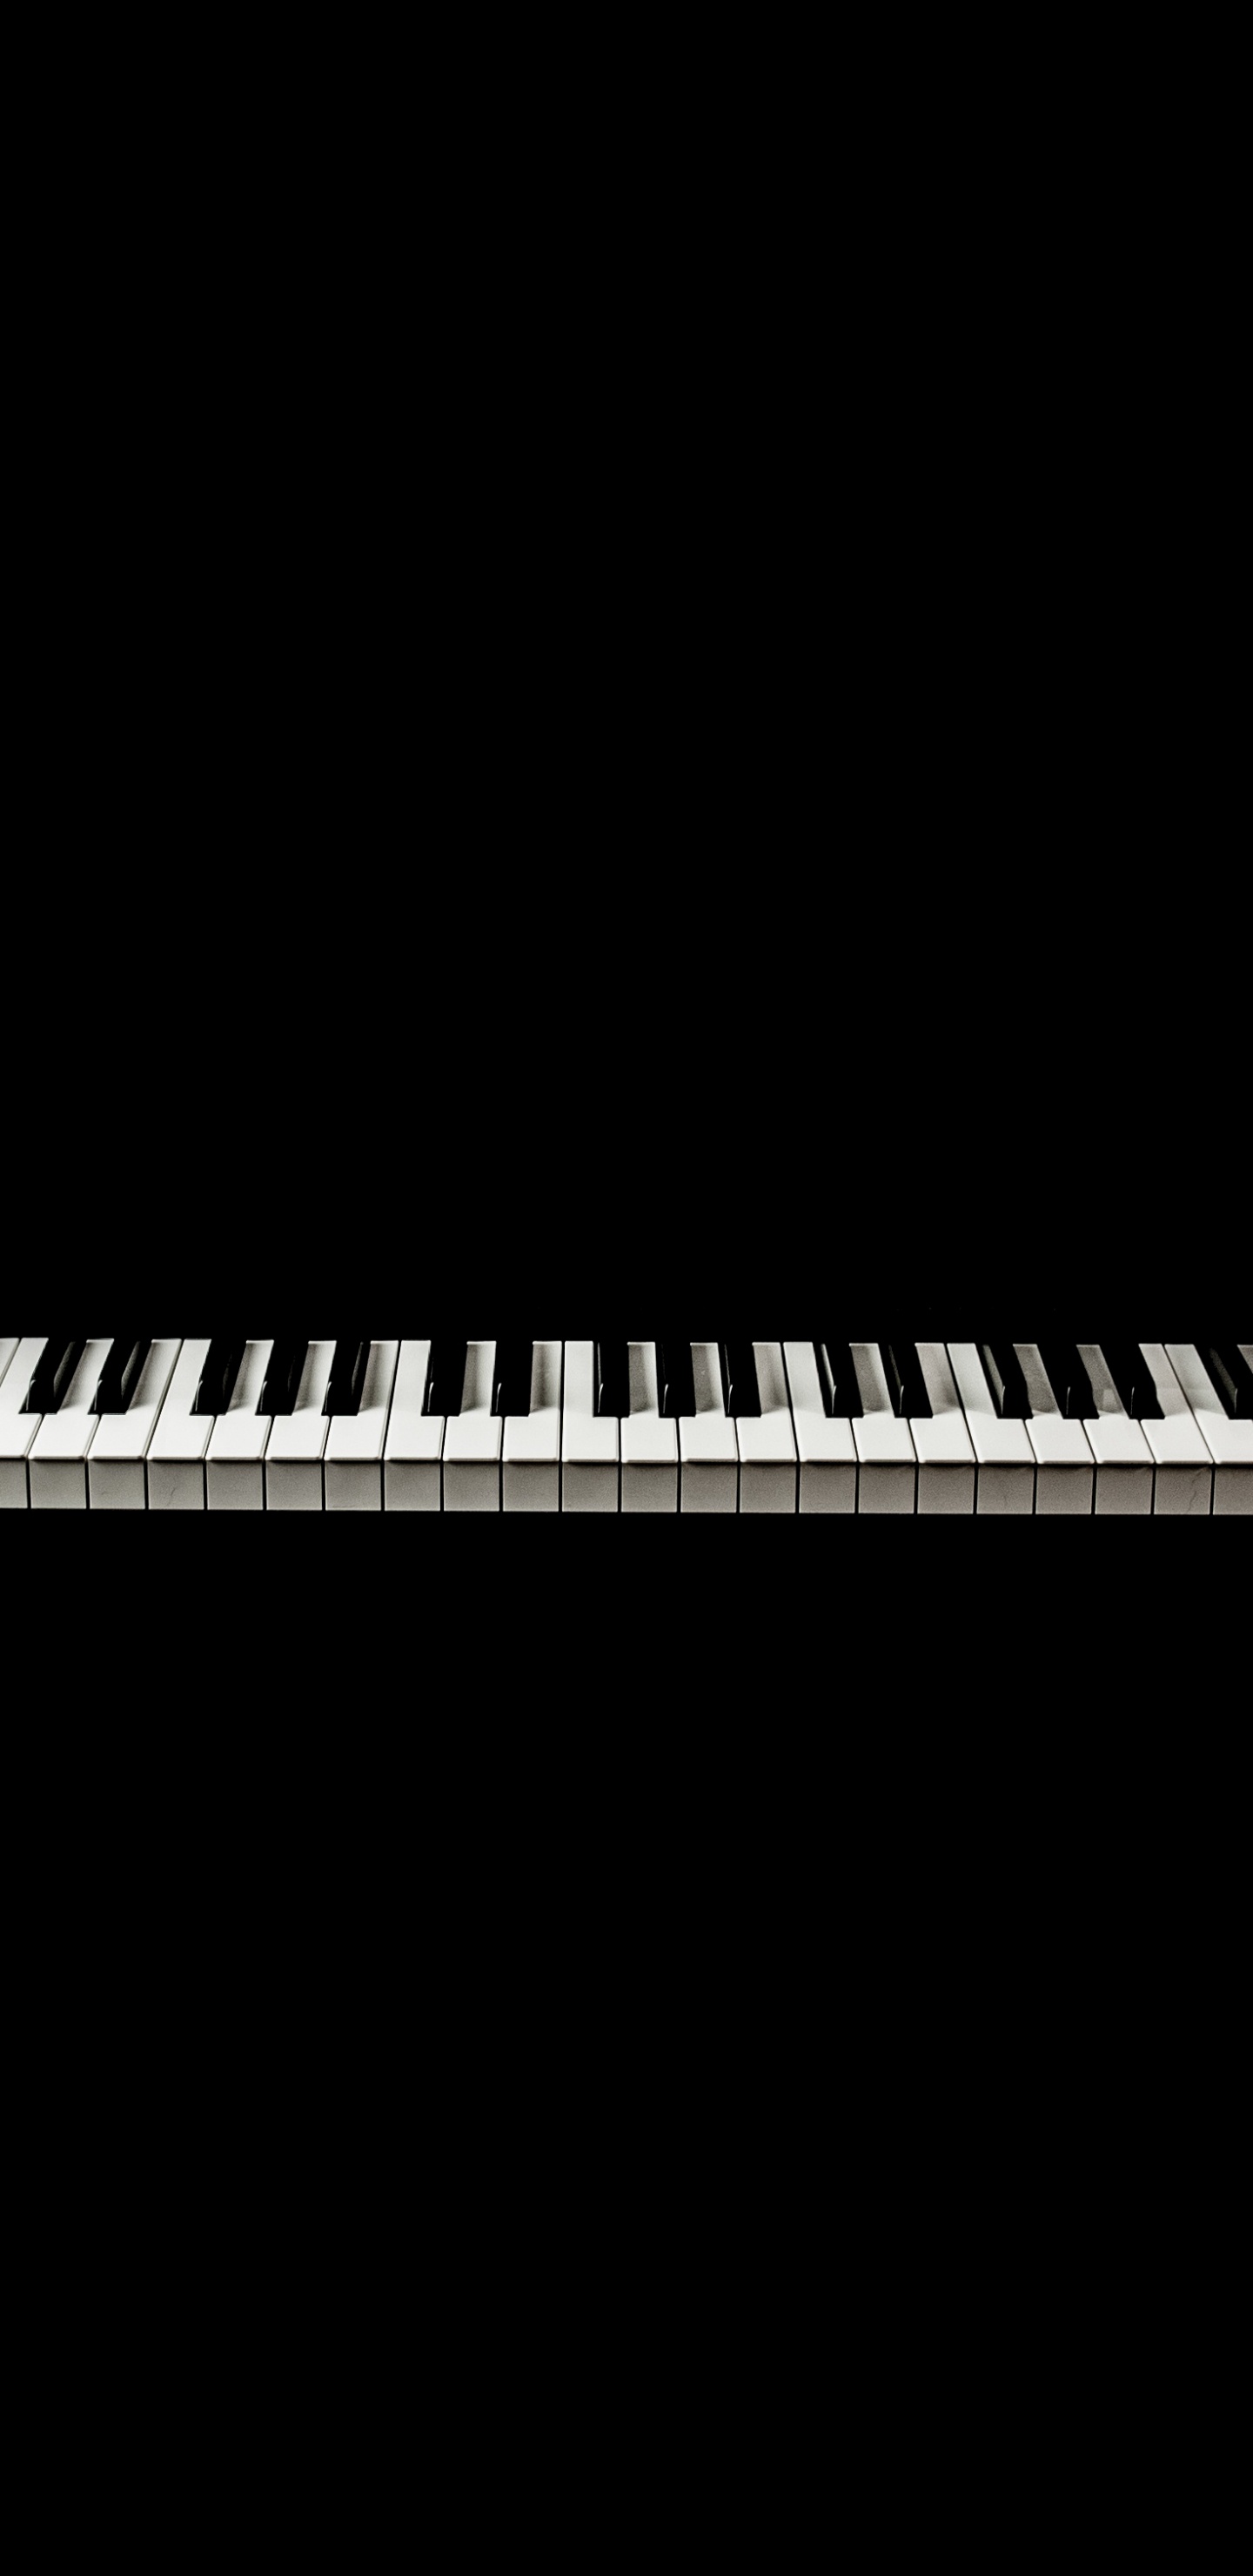 音乐键盘, 数字钢琴, 电子琴, 钢琴, 键盘 壁纸 1440x2960 允许